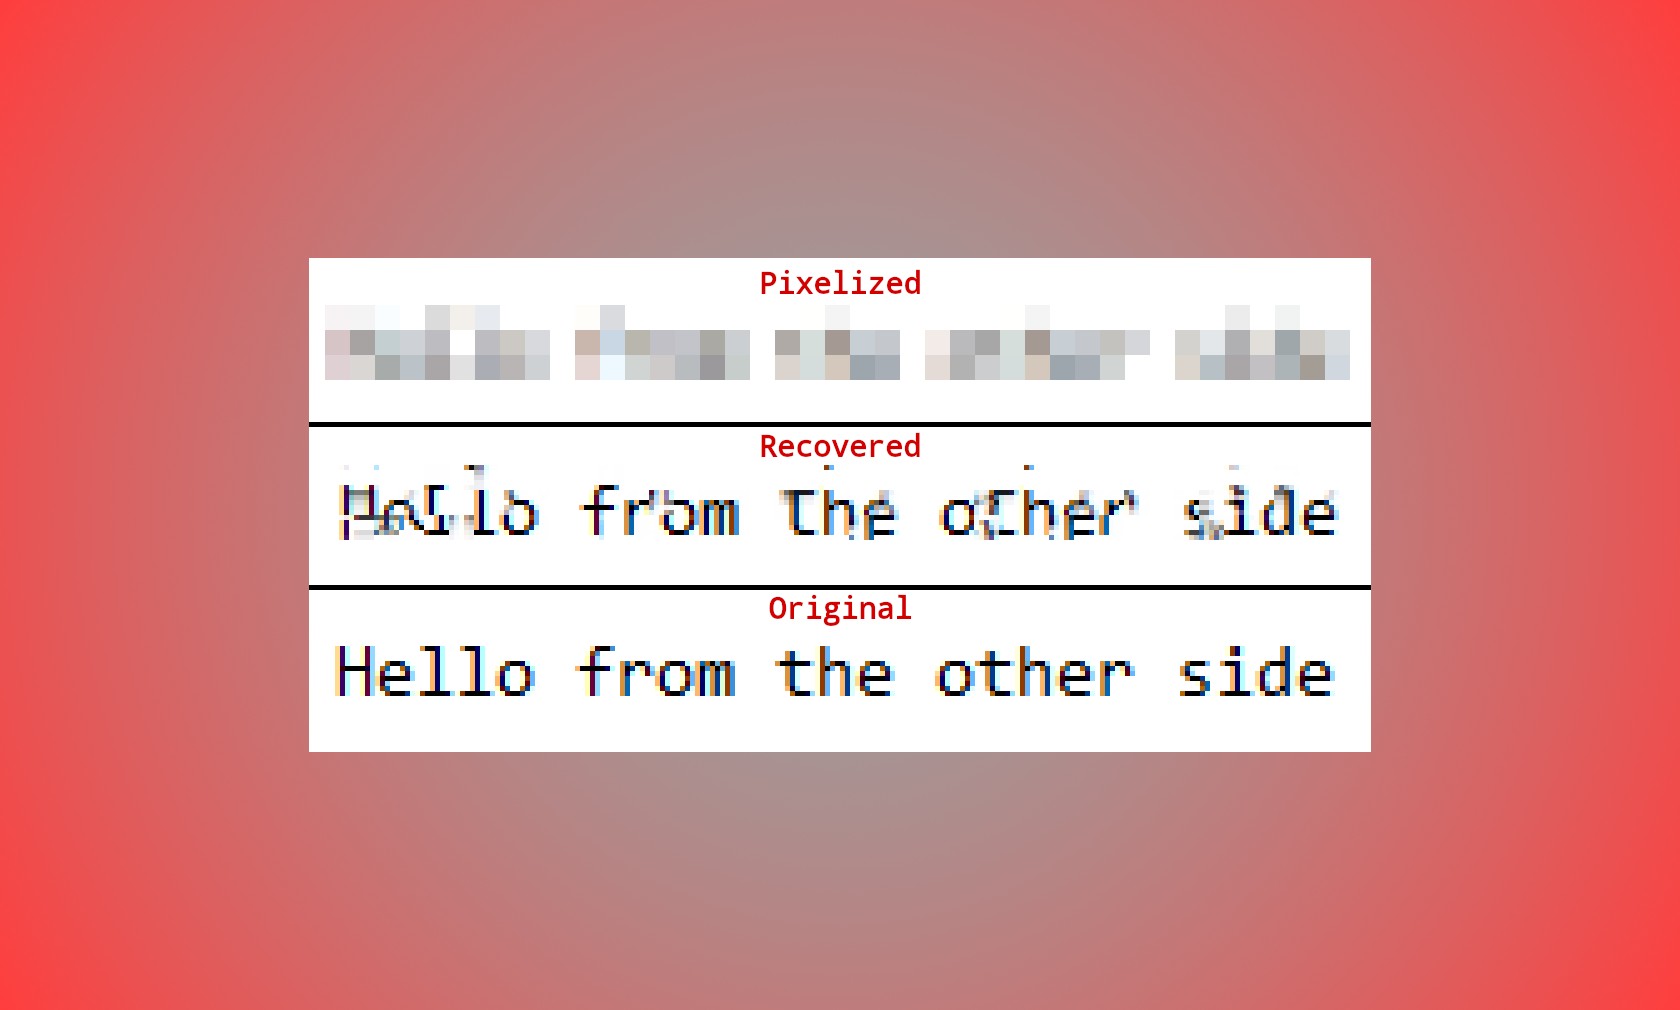 Пикселизировать пароли теперь небезопасно: на GitHub появилась утилита, которая расшифровывает их